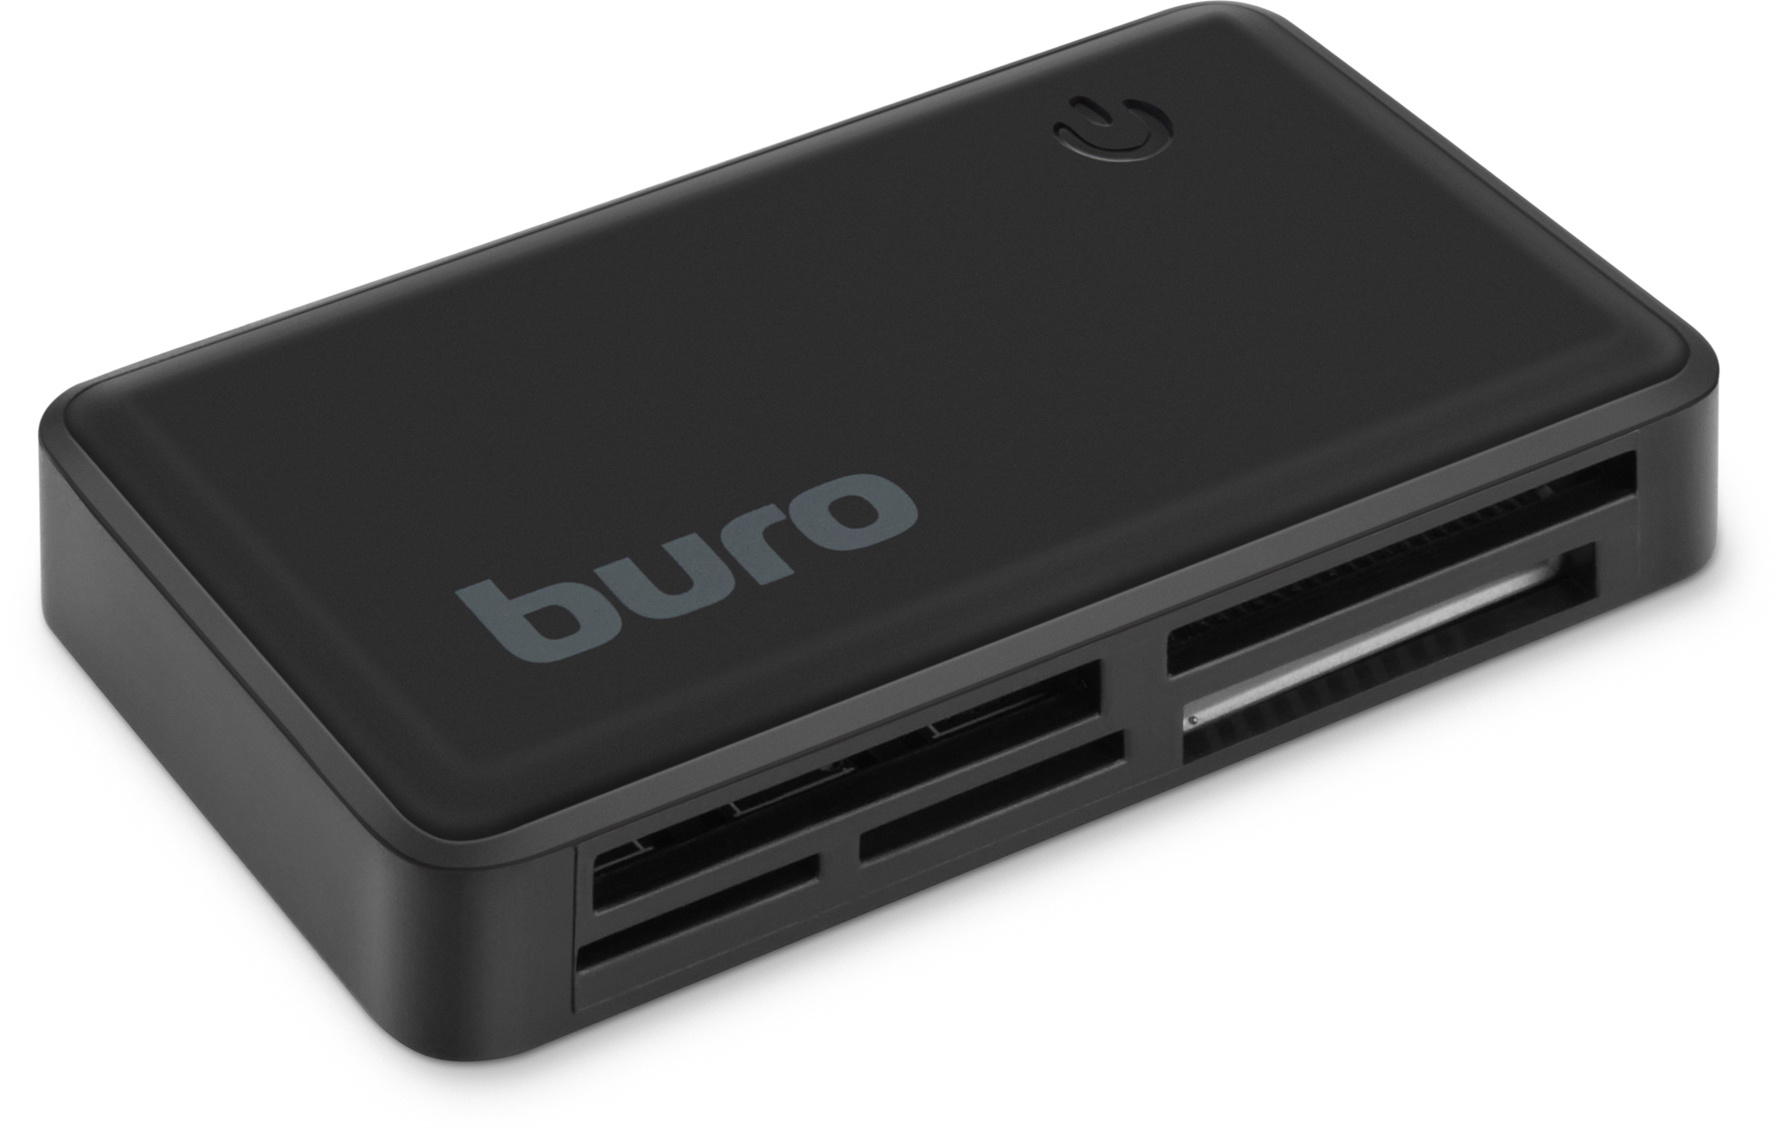 Устpoйствo чтeния кapт пaмяти USB2.0 Buro BU-CR-151 чepный